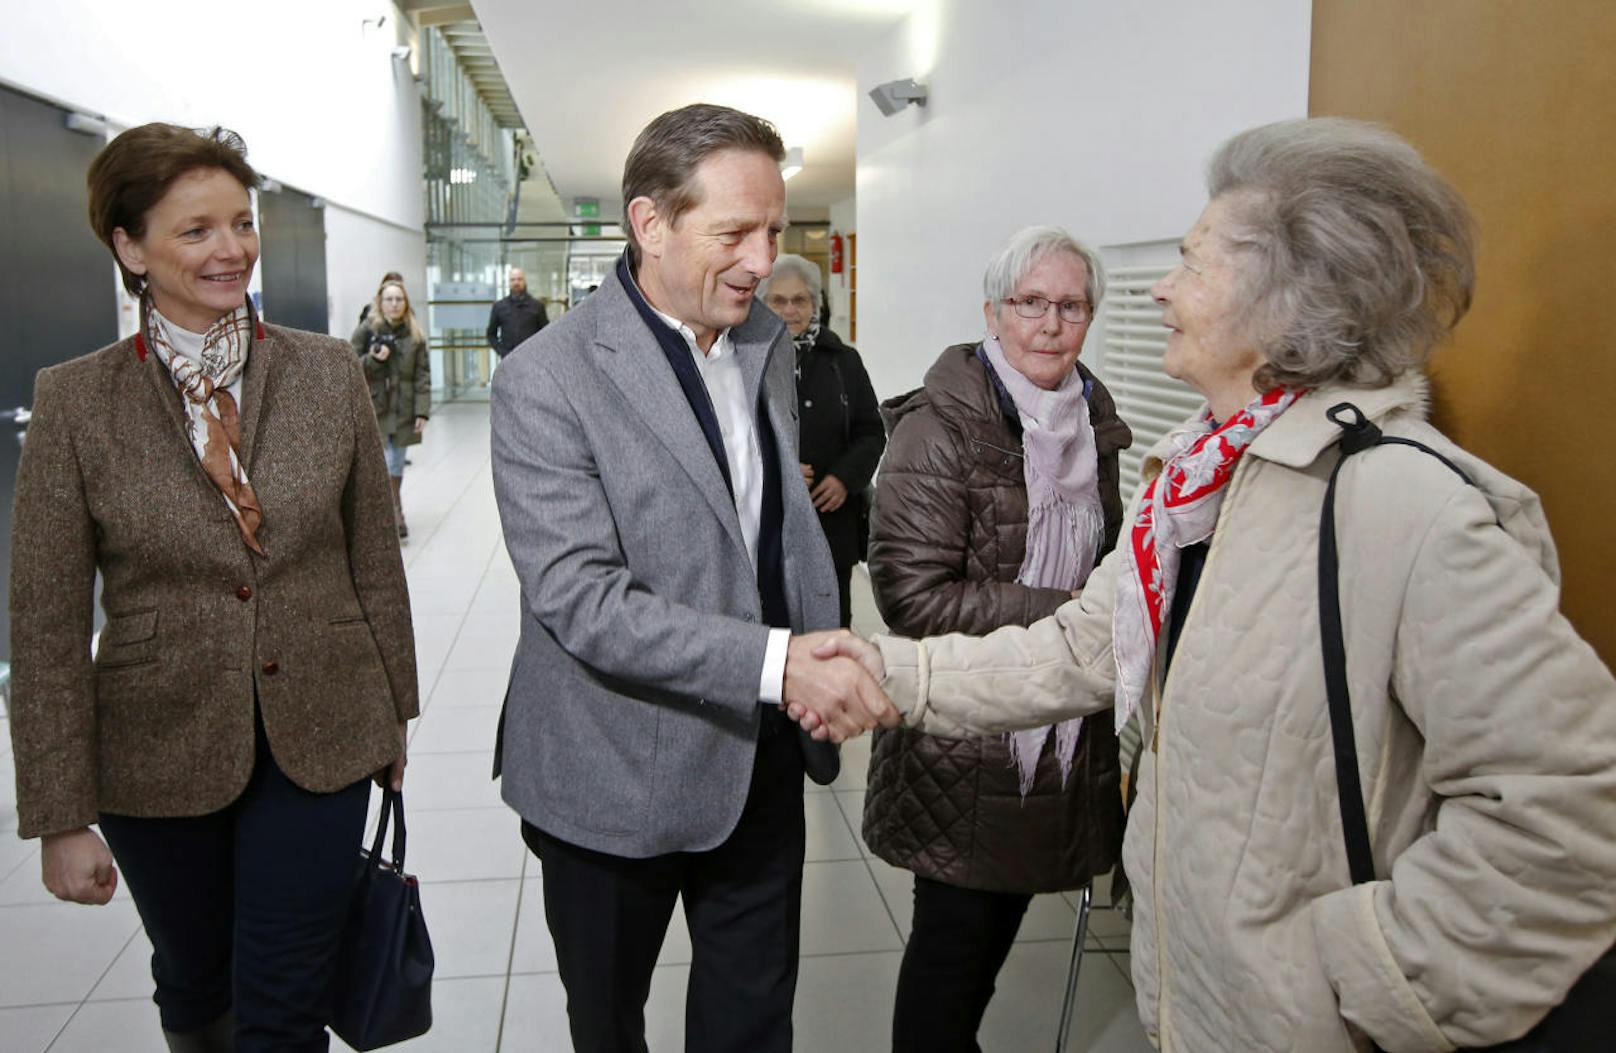 ÖVP-Spitzenkandidat Christian Benger mit Ehefrau Christiane im Rahmen der Stimmabgabe in Griffen am Sonntag, 4. März 2018, anlässlich der Kärntner Landtagswahl.